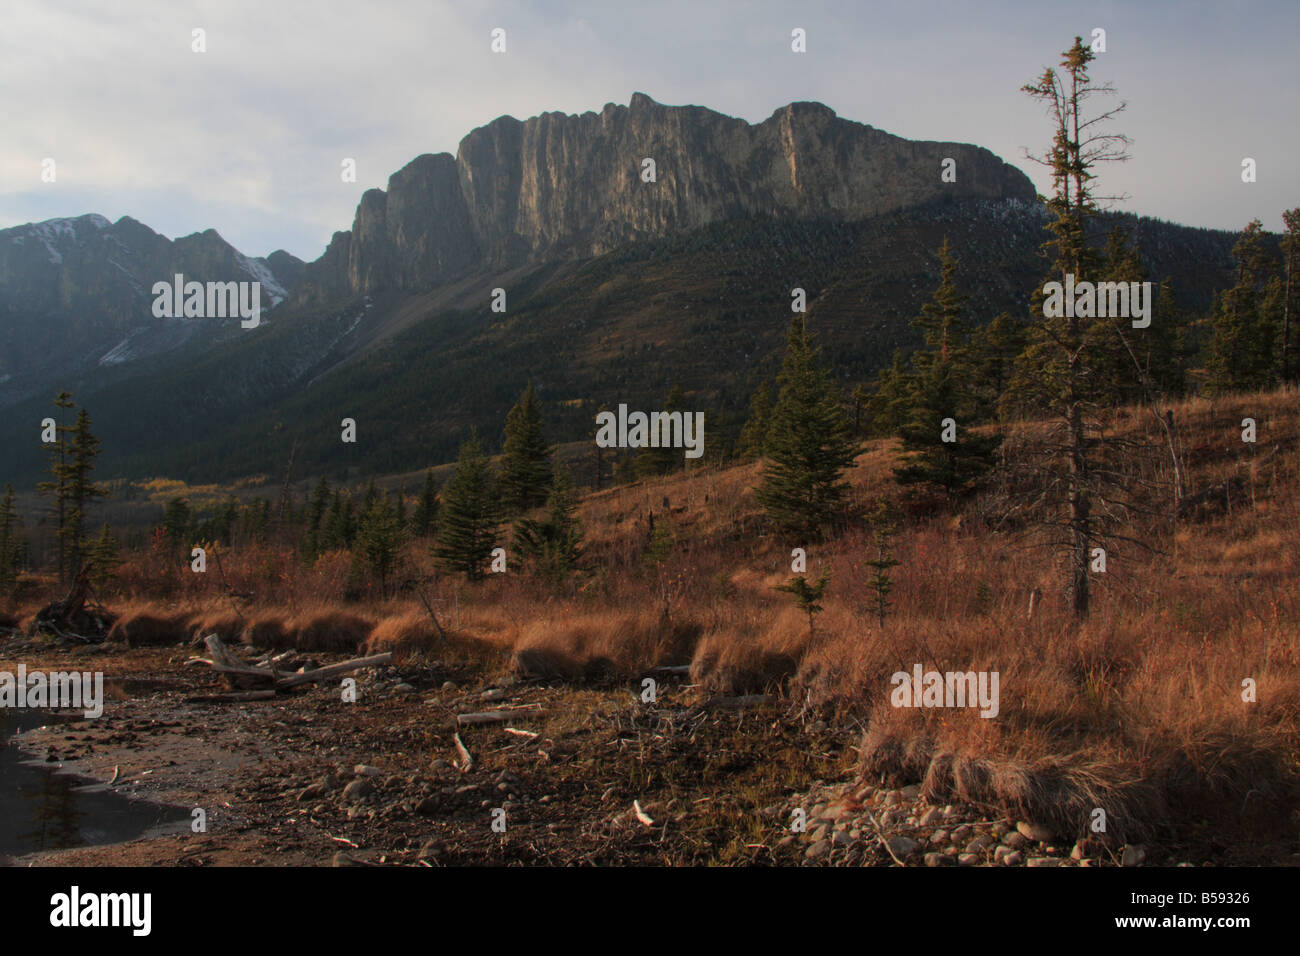 Mount Yamnuska near Canmore, Alberta Stock Photo